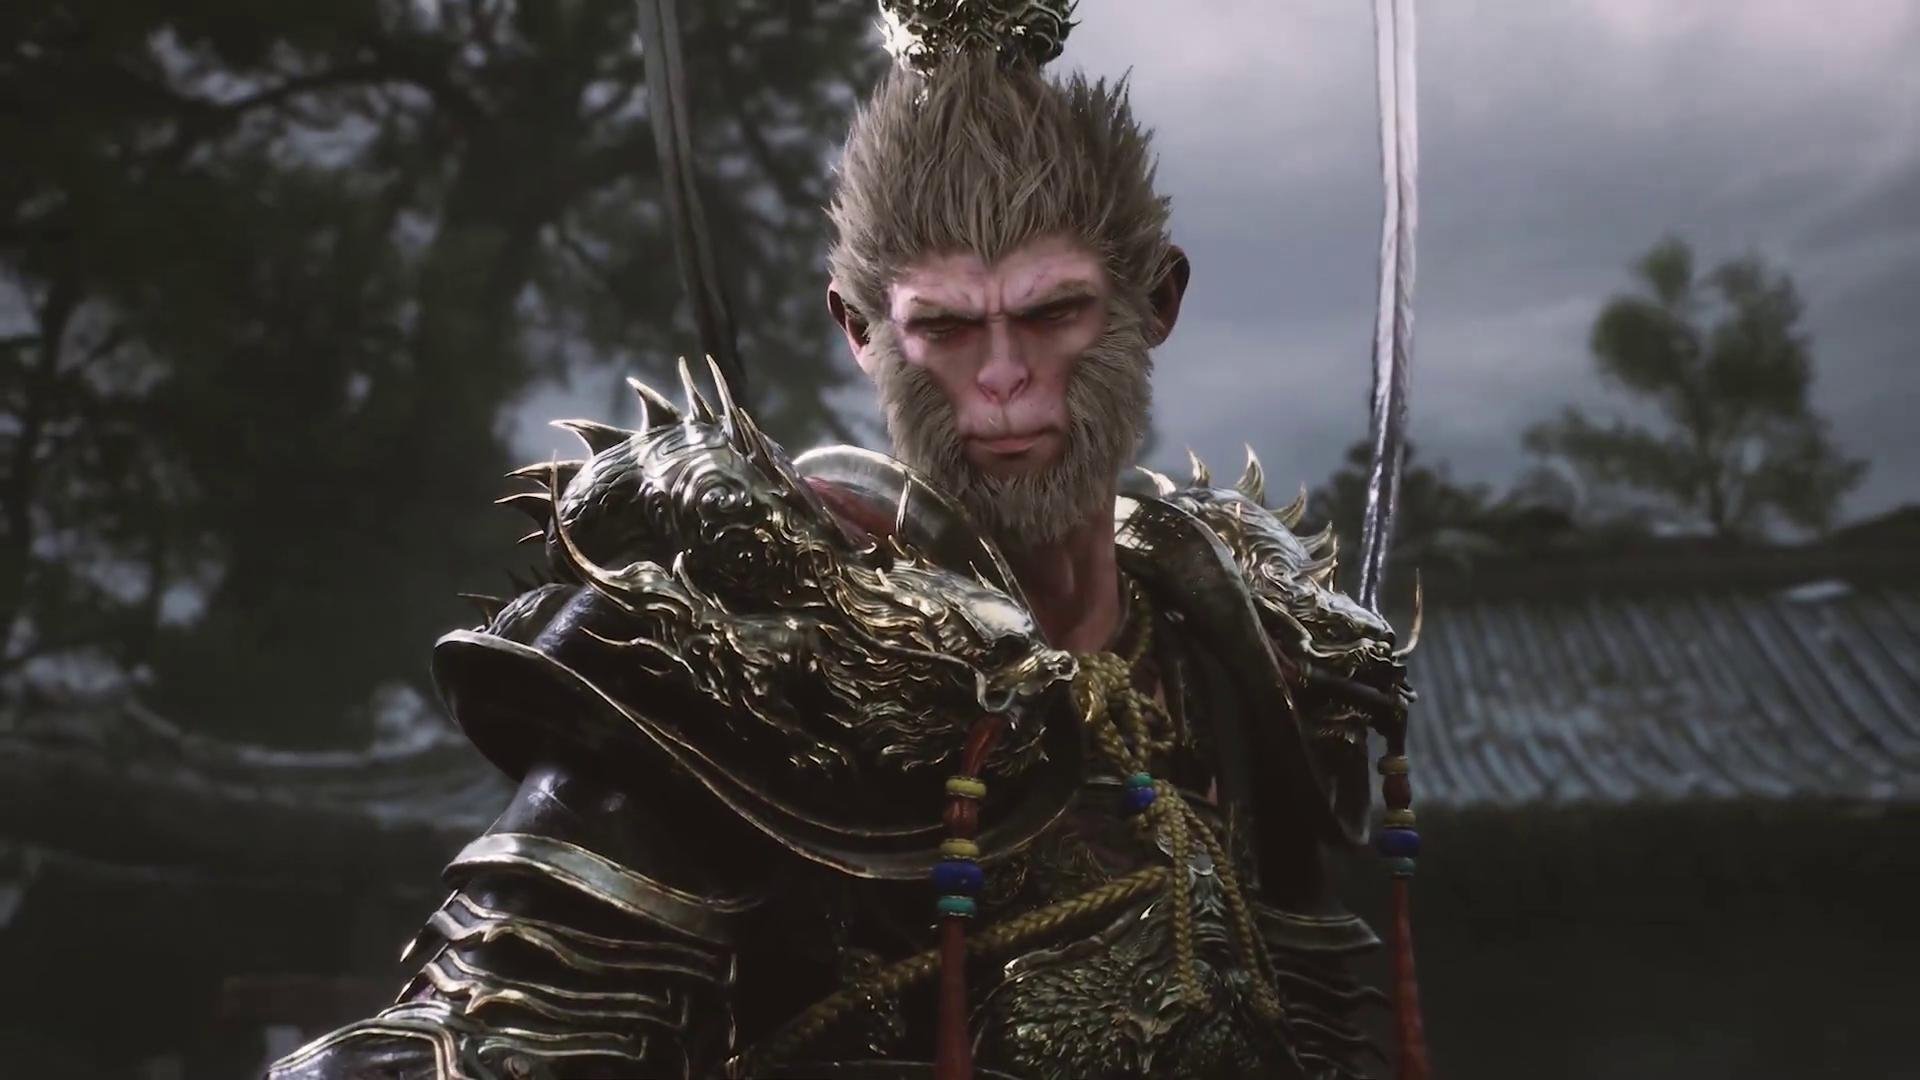 The Crown of Wu, jogo inspirado na lenda do Rei Macaco, ganha data oficial  de lançamento